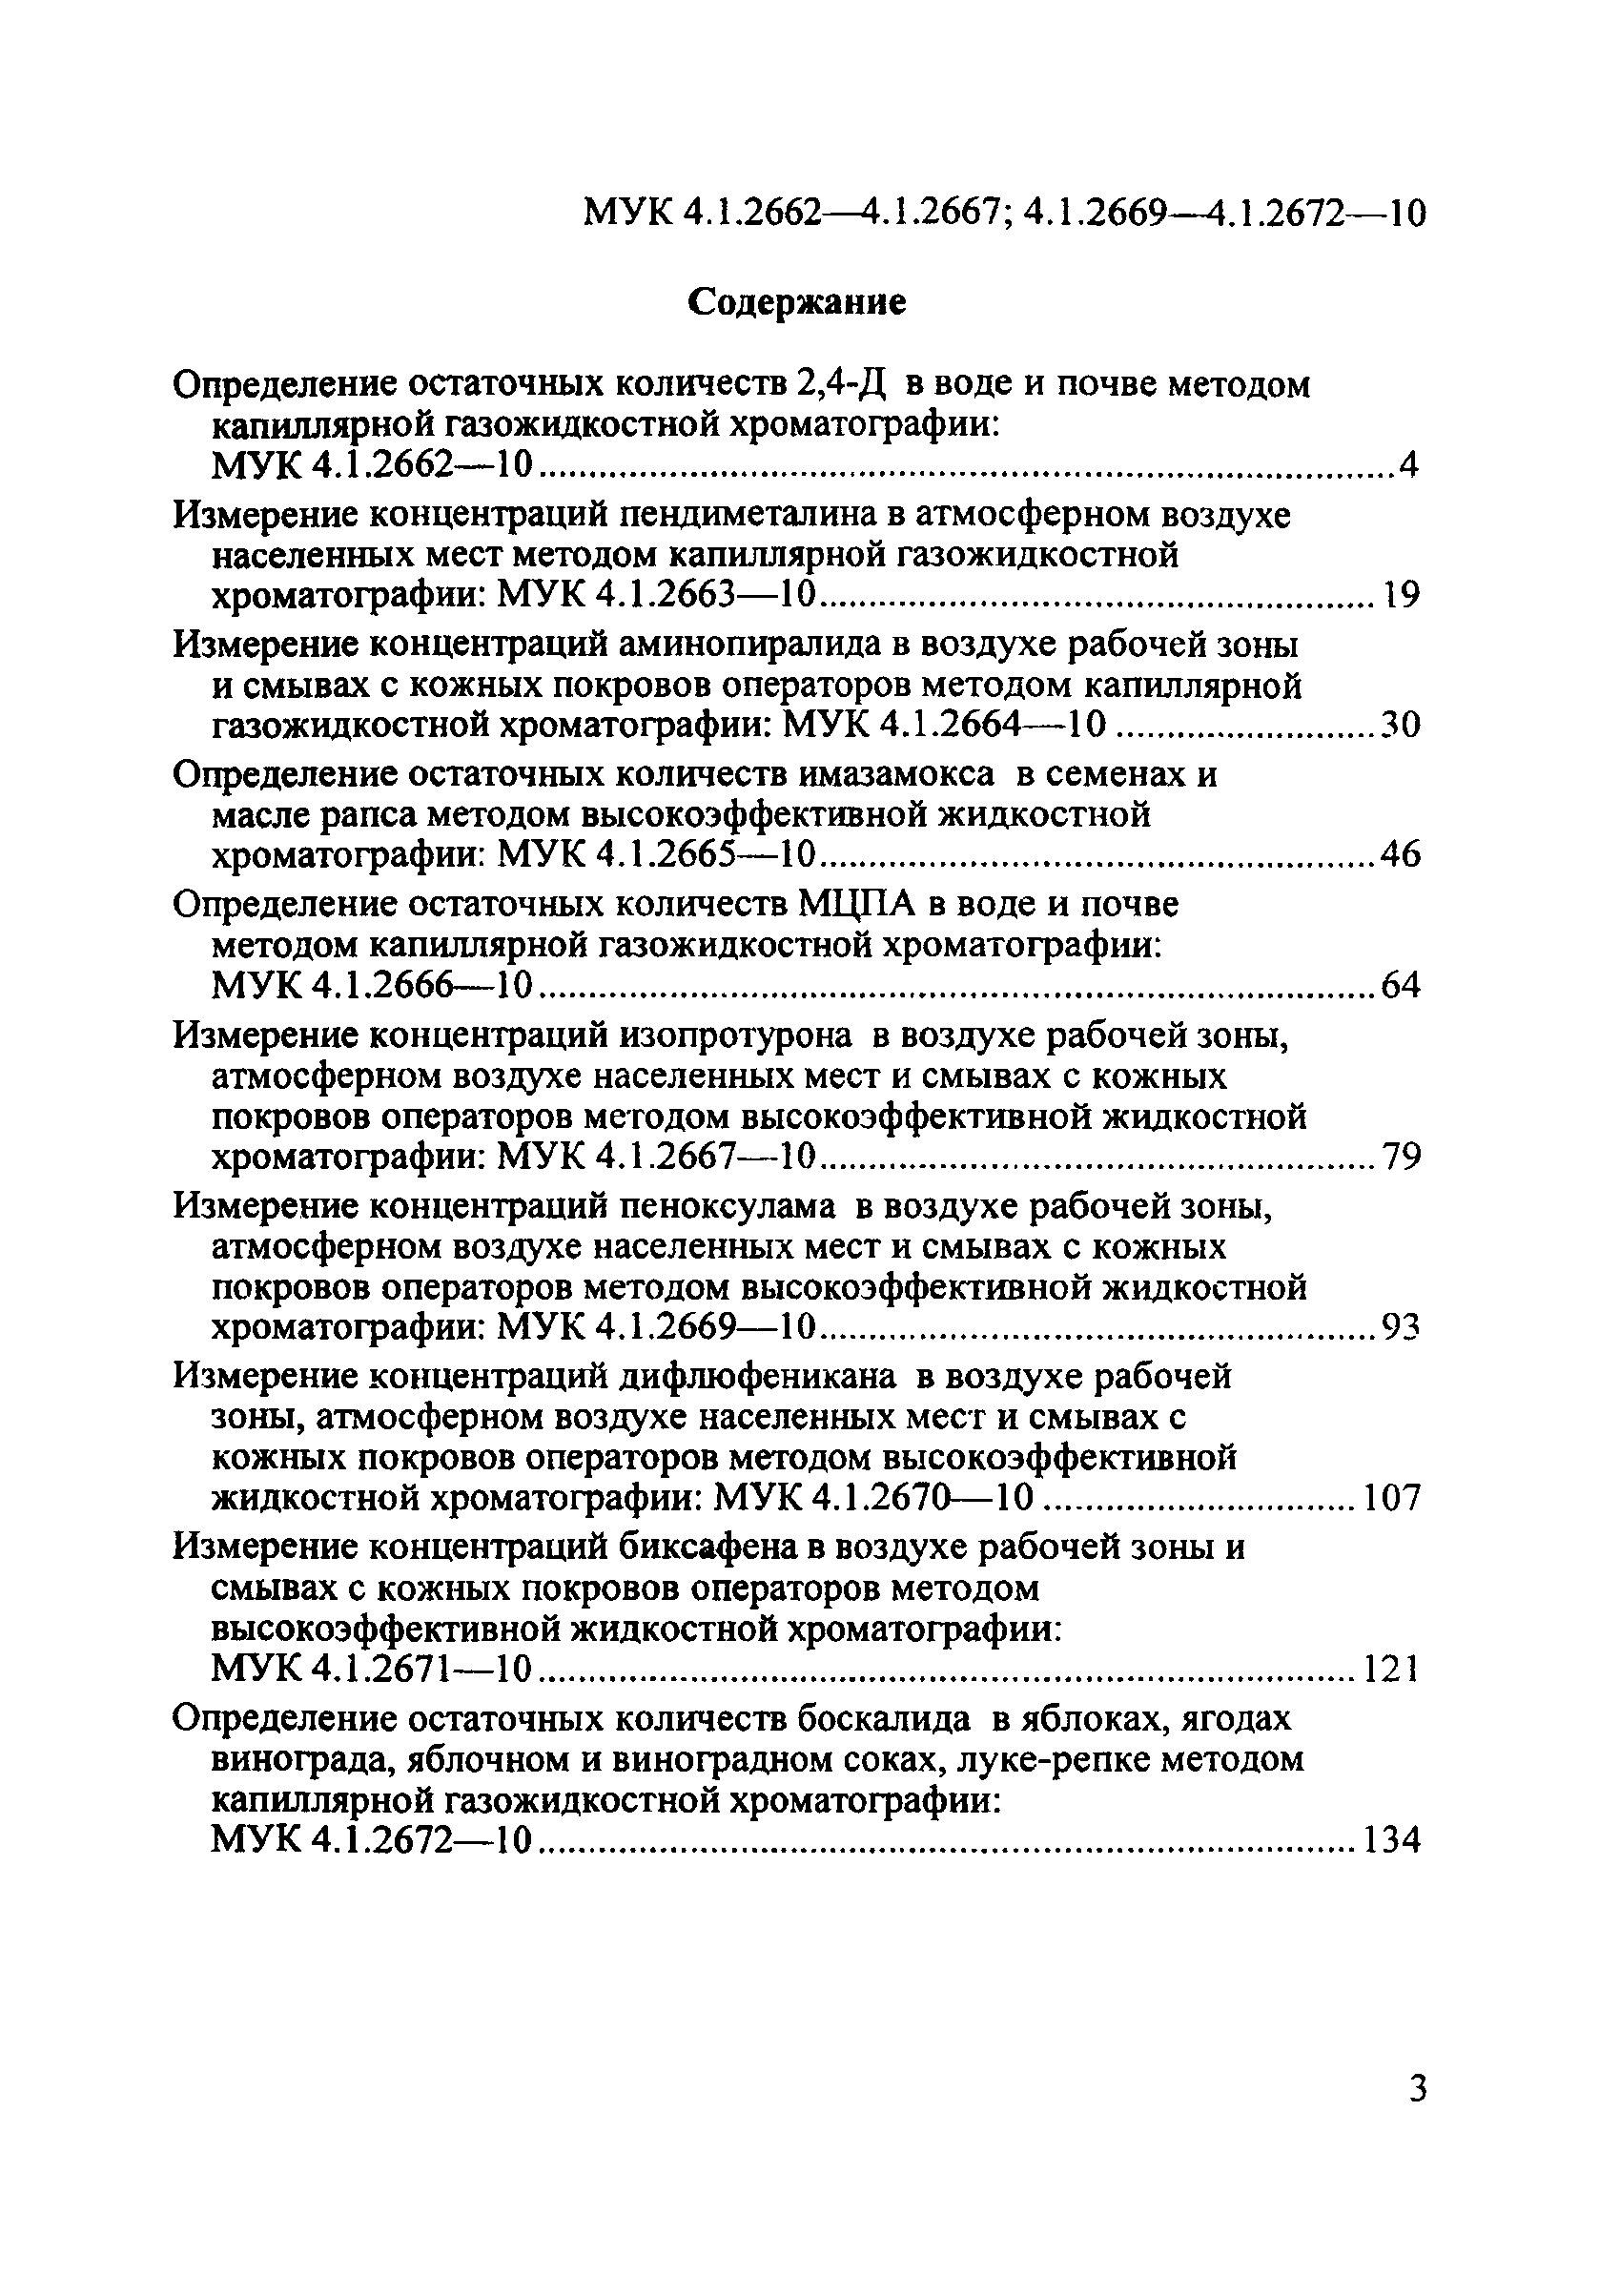 МУК 4.1.2669-10